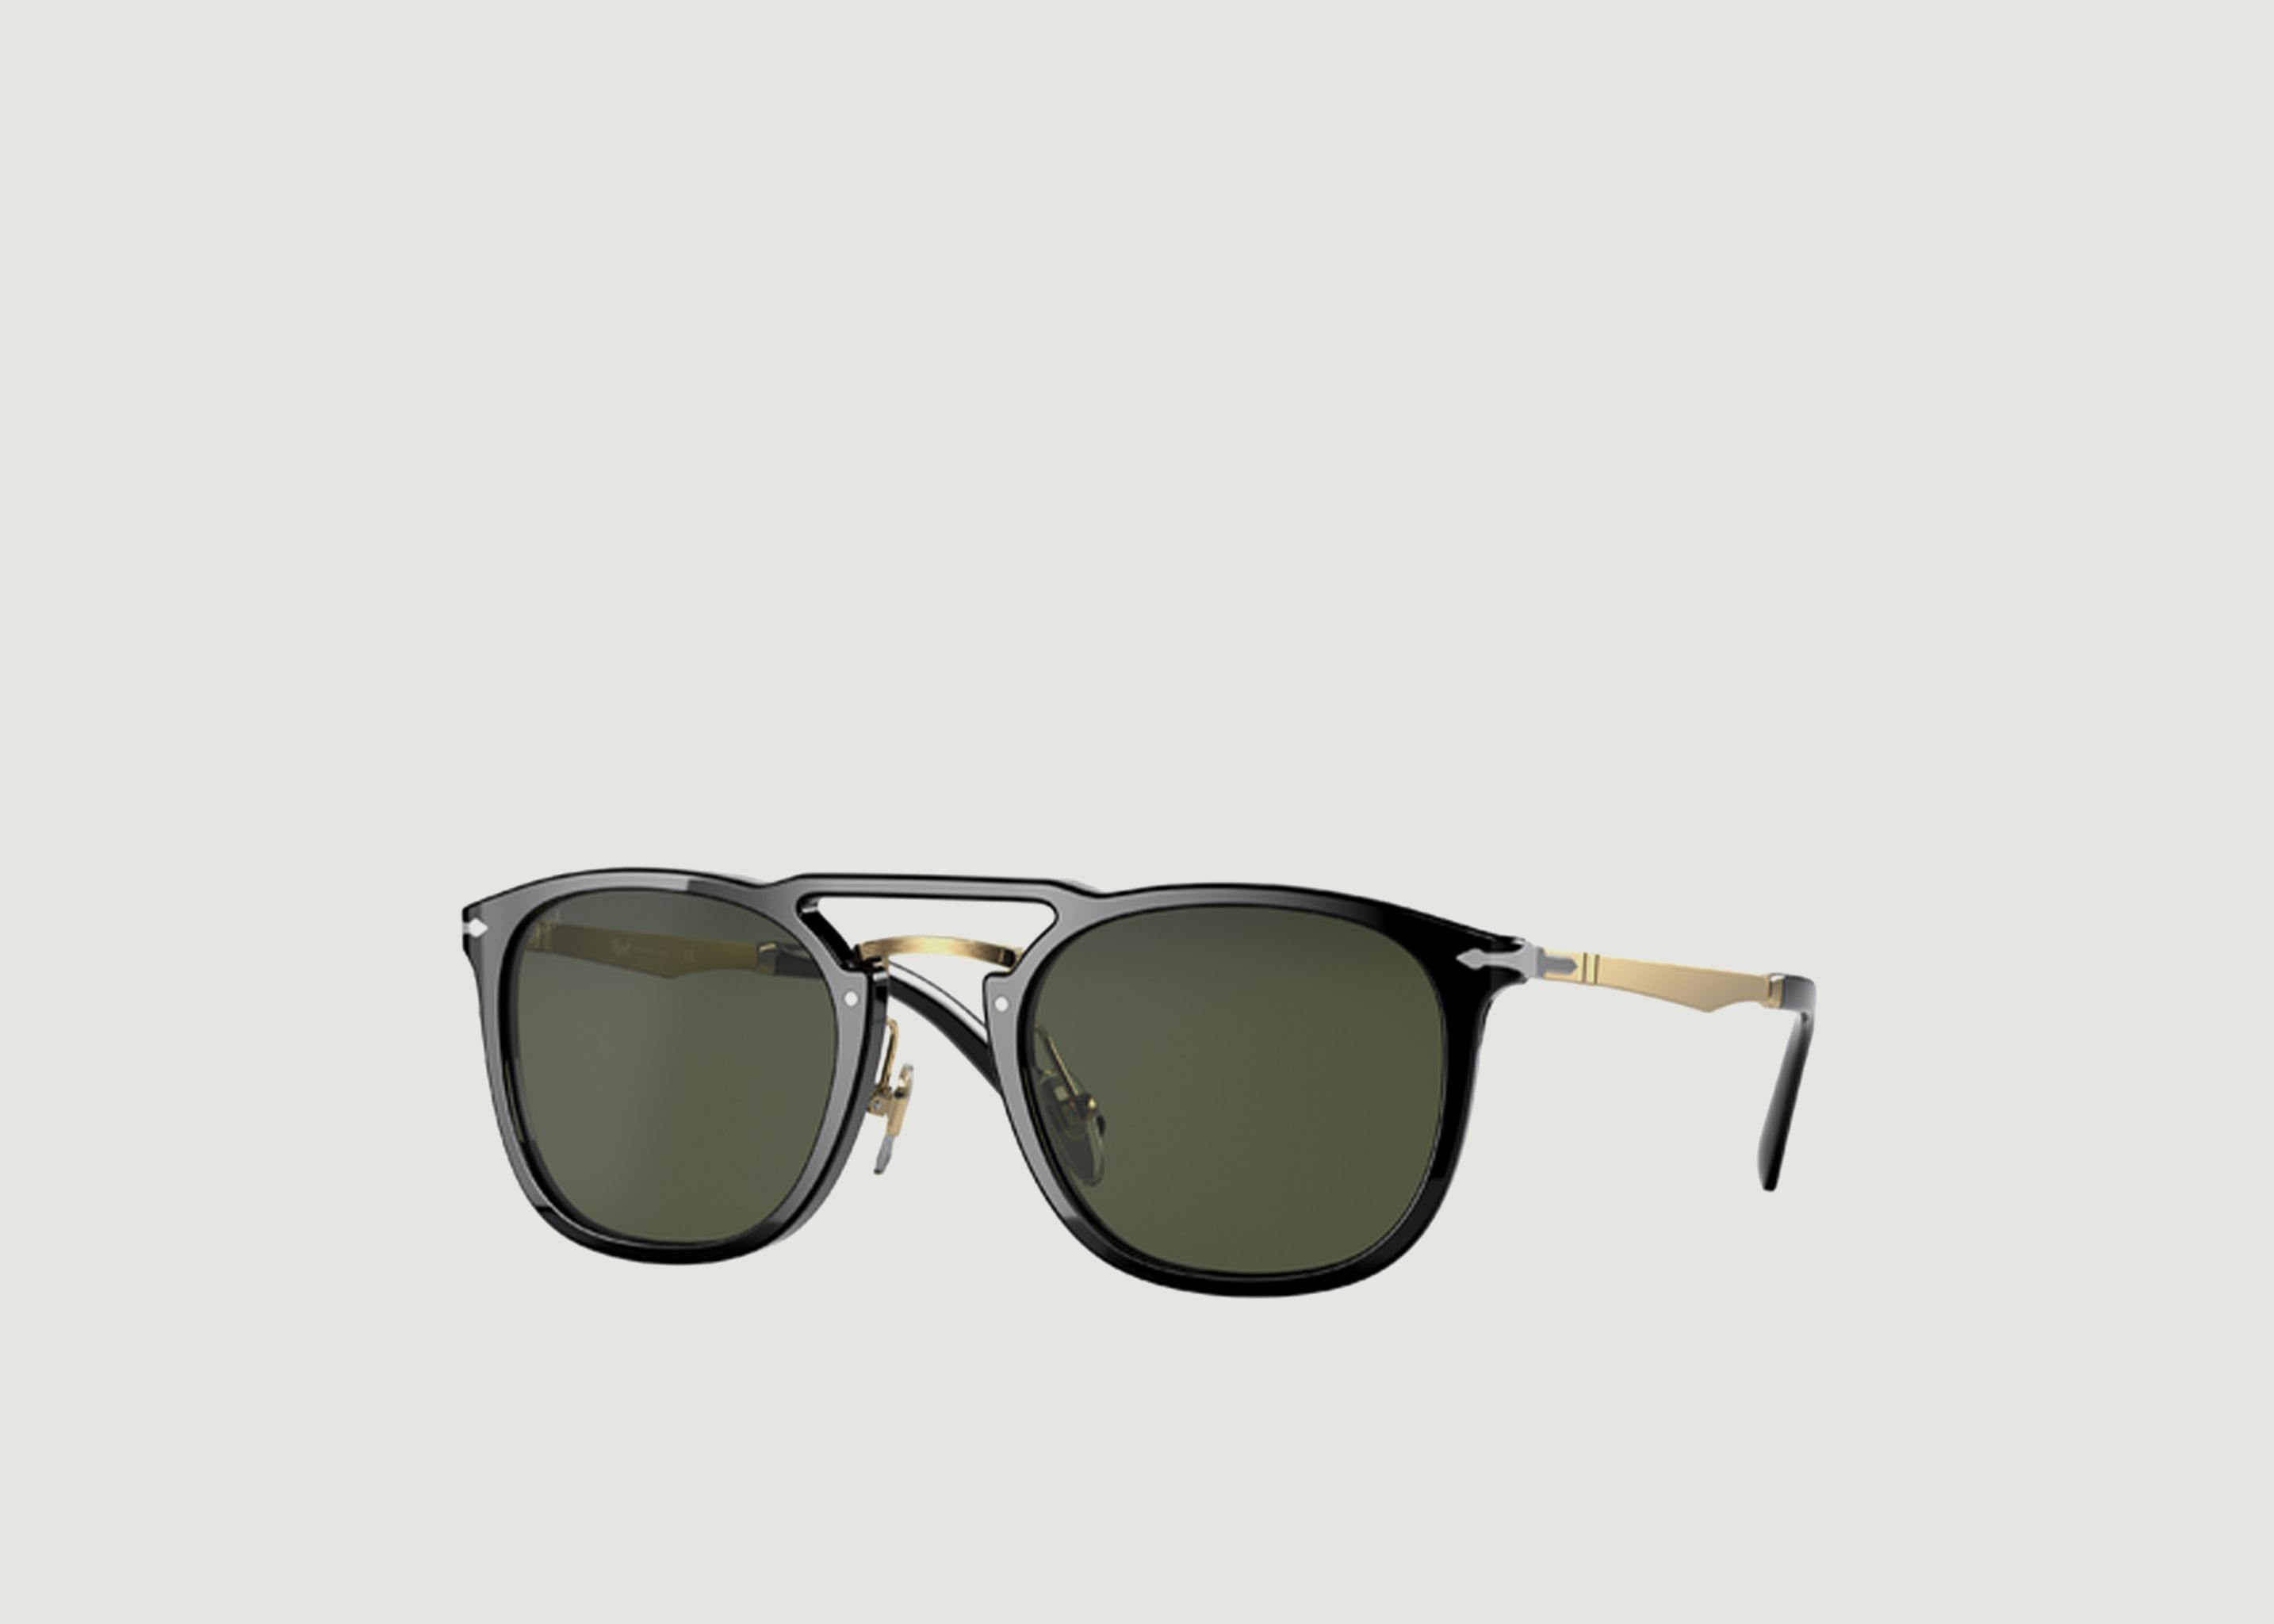 Sunglasses Sartoria Collection - Persol